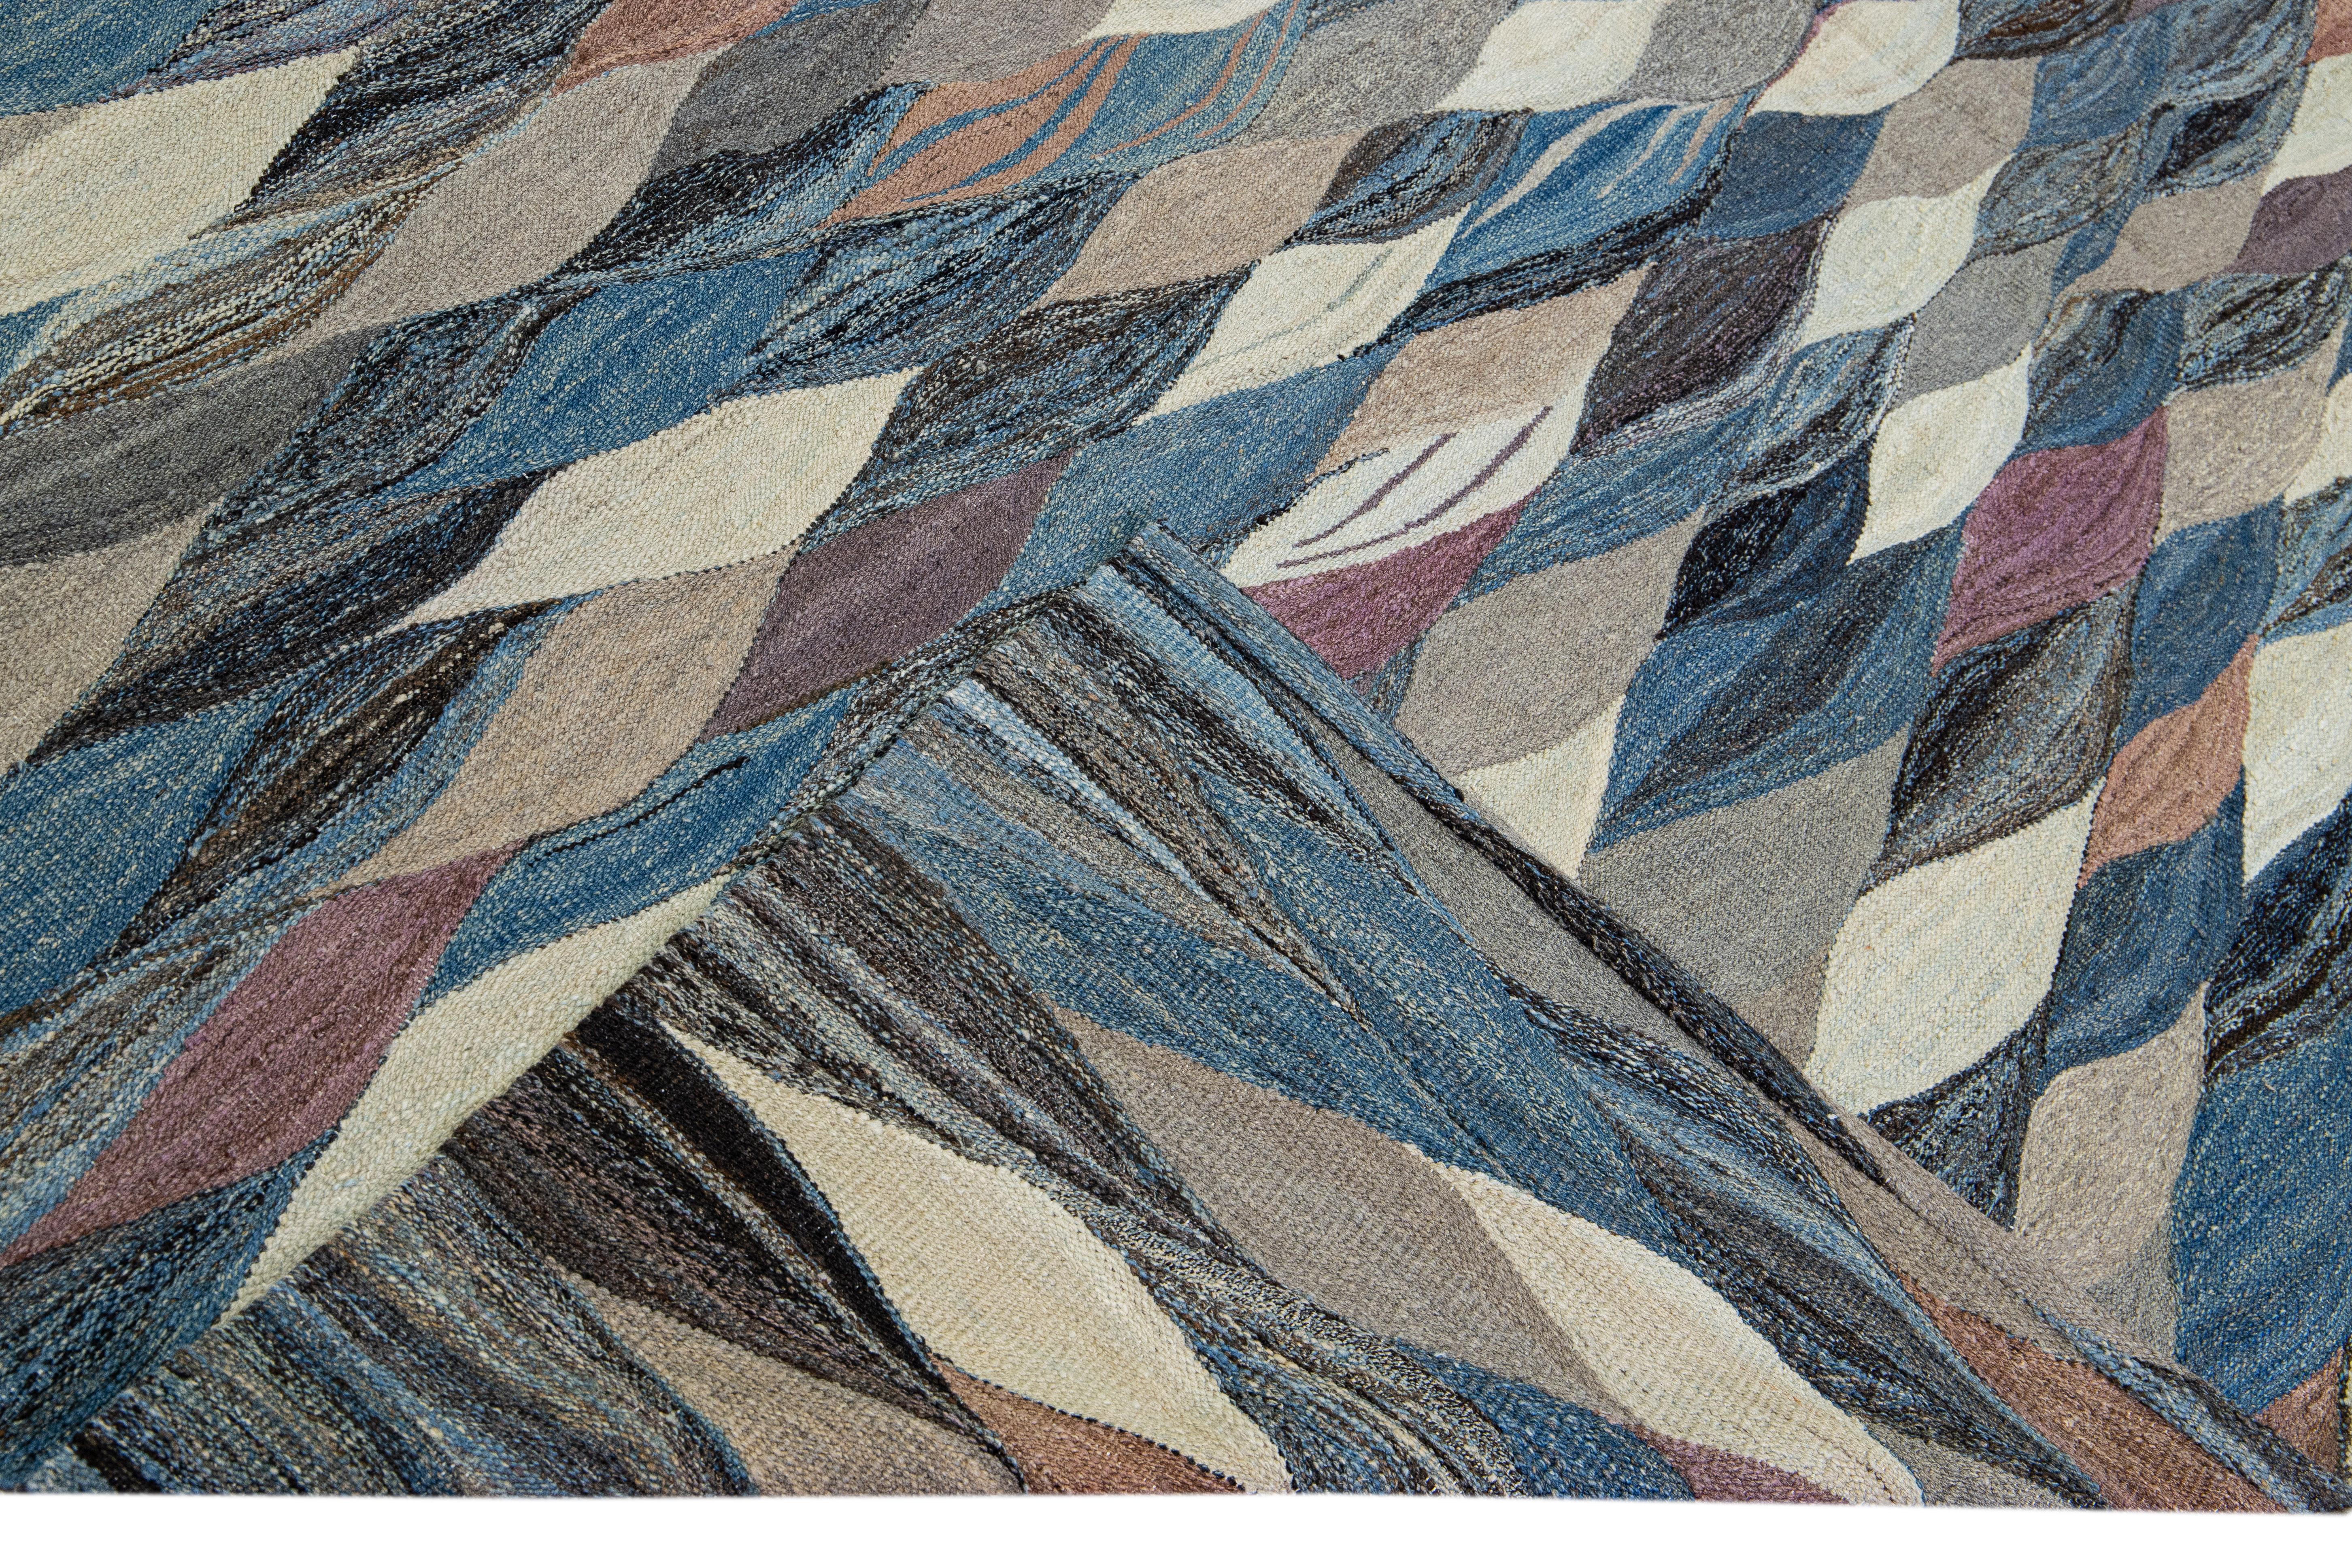 Magnifique tapis Kilim moderne en laine tissé à plat, fait à la main, avec un champ bleu. Ce tapis Kilim a des accents multicolores dans un magnifique design expressionniste abstrait.

Ce tapis mesure : 11'.8